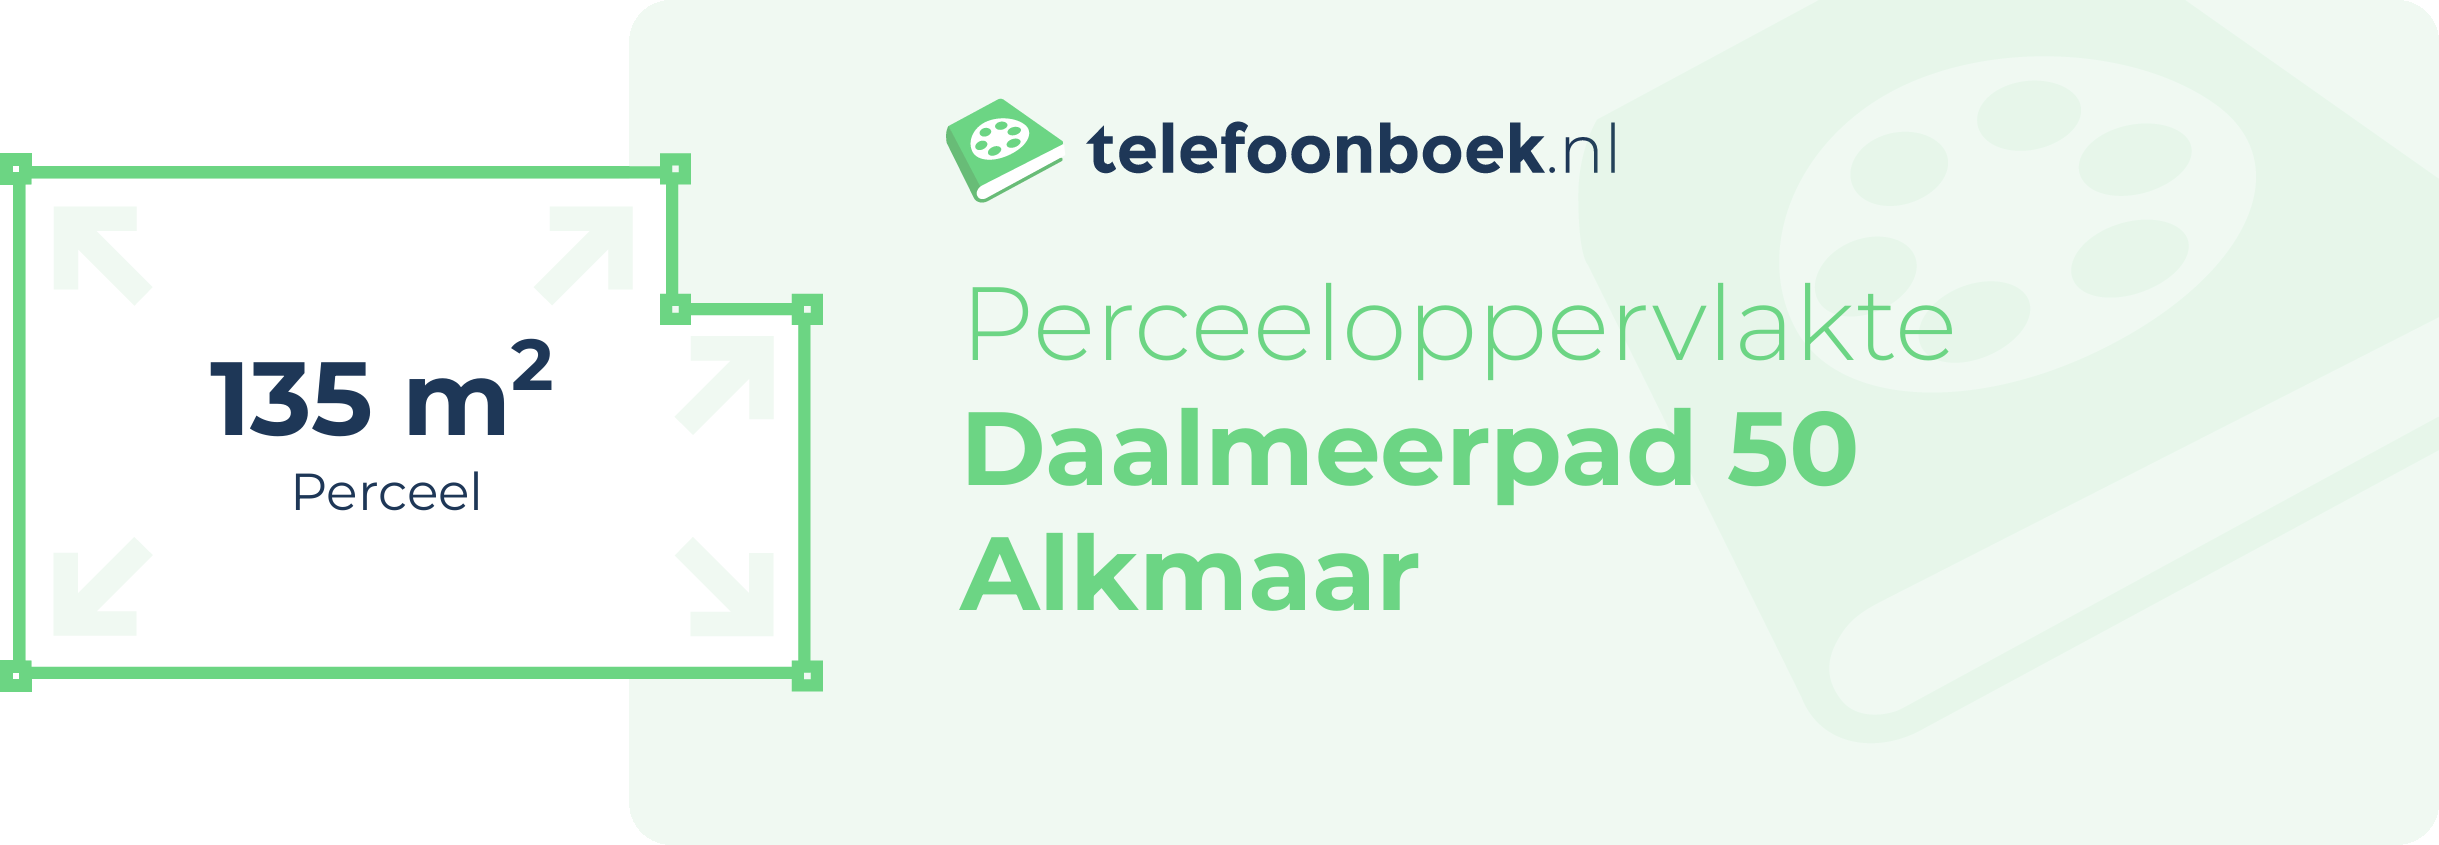 Perceeloppervlakte Daalmeerpad 50 Alkmaar